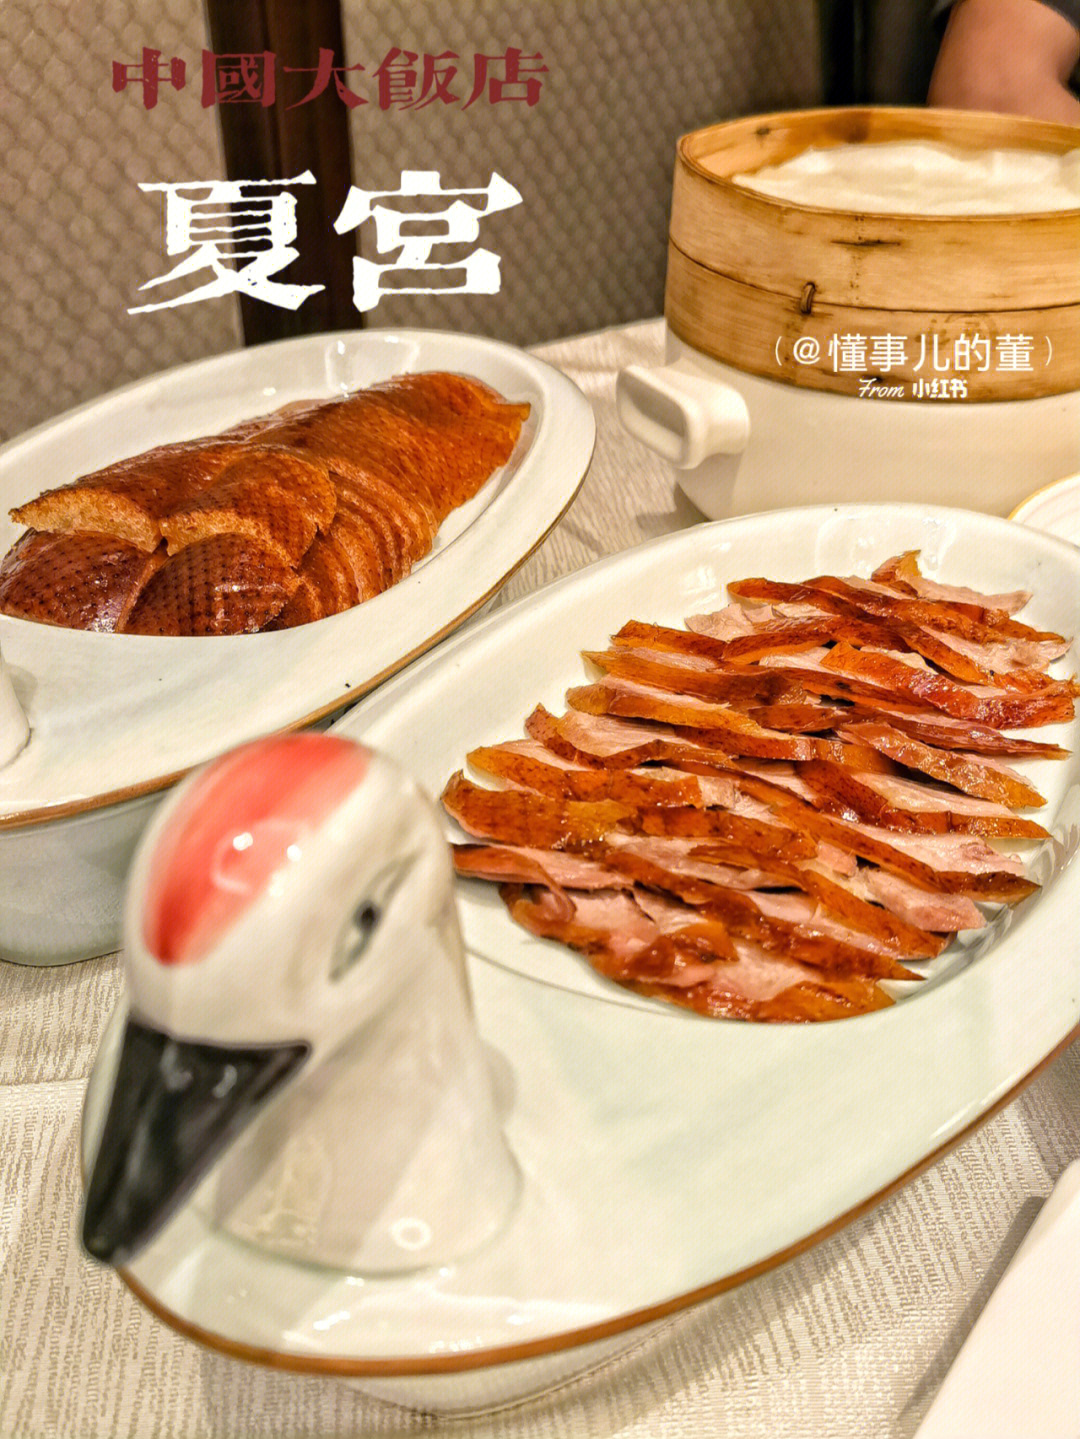 夏宫·中国大饭店是香格里拉旗下的米其林餐厅环境富丽堂皇大气典雅